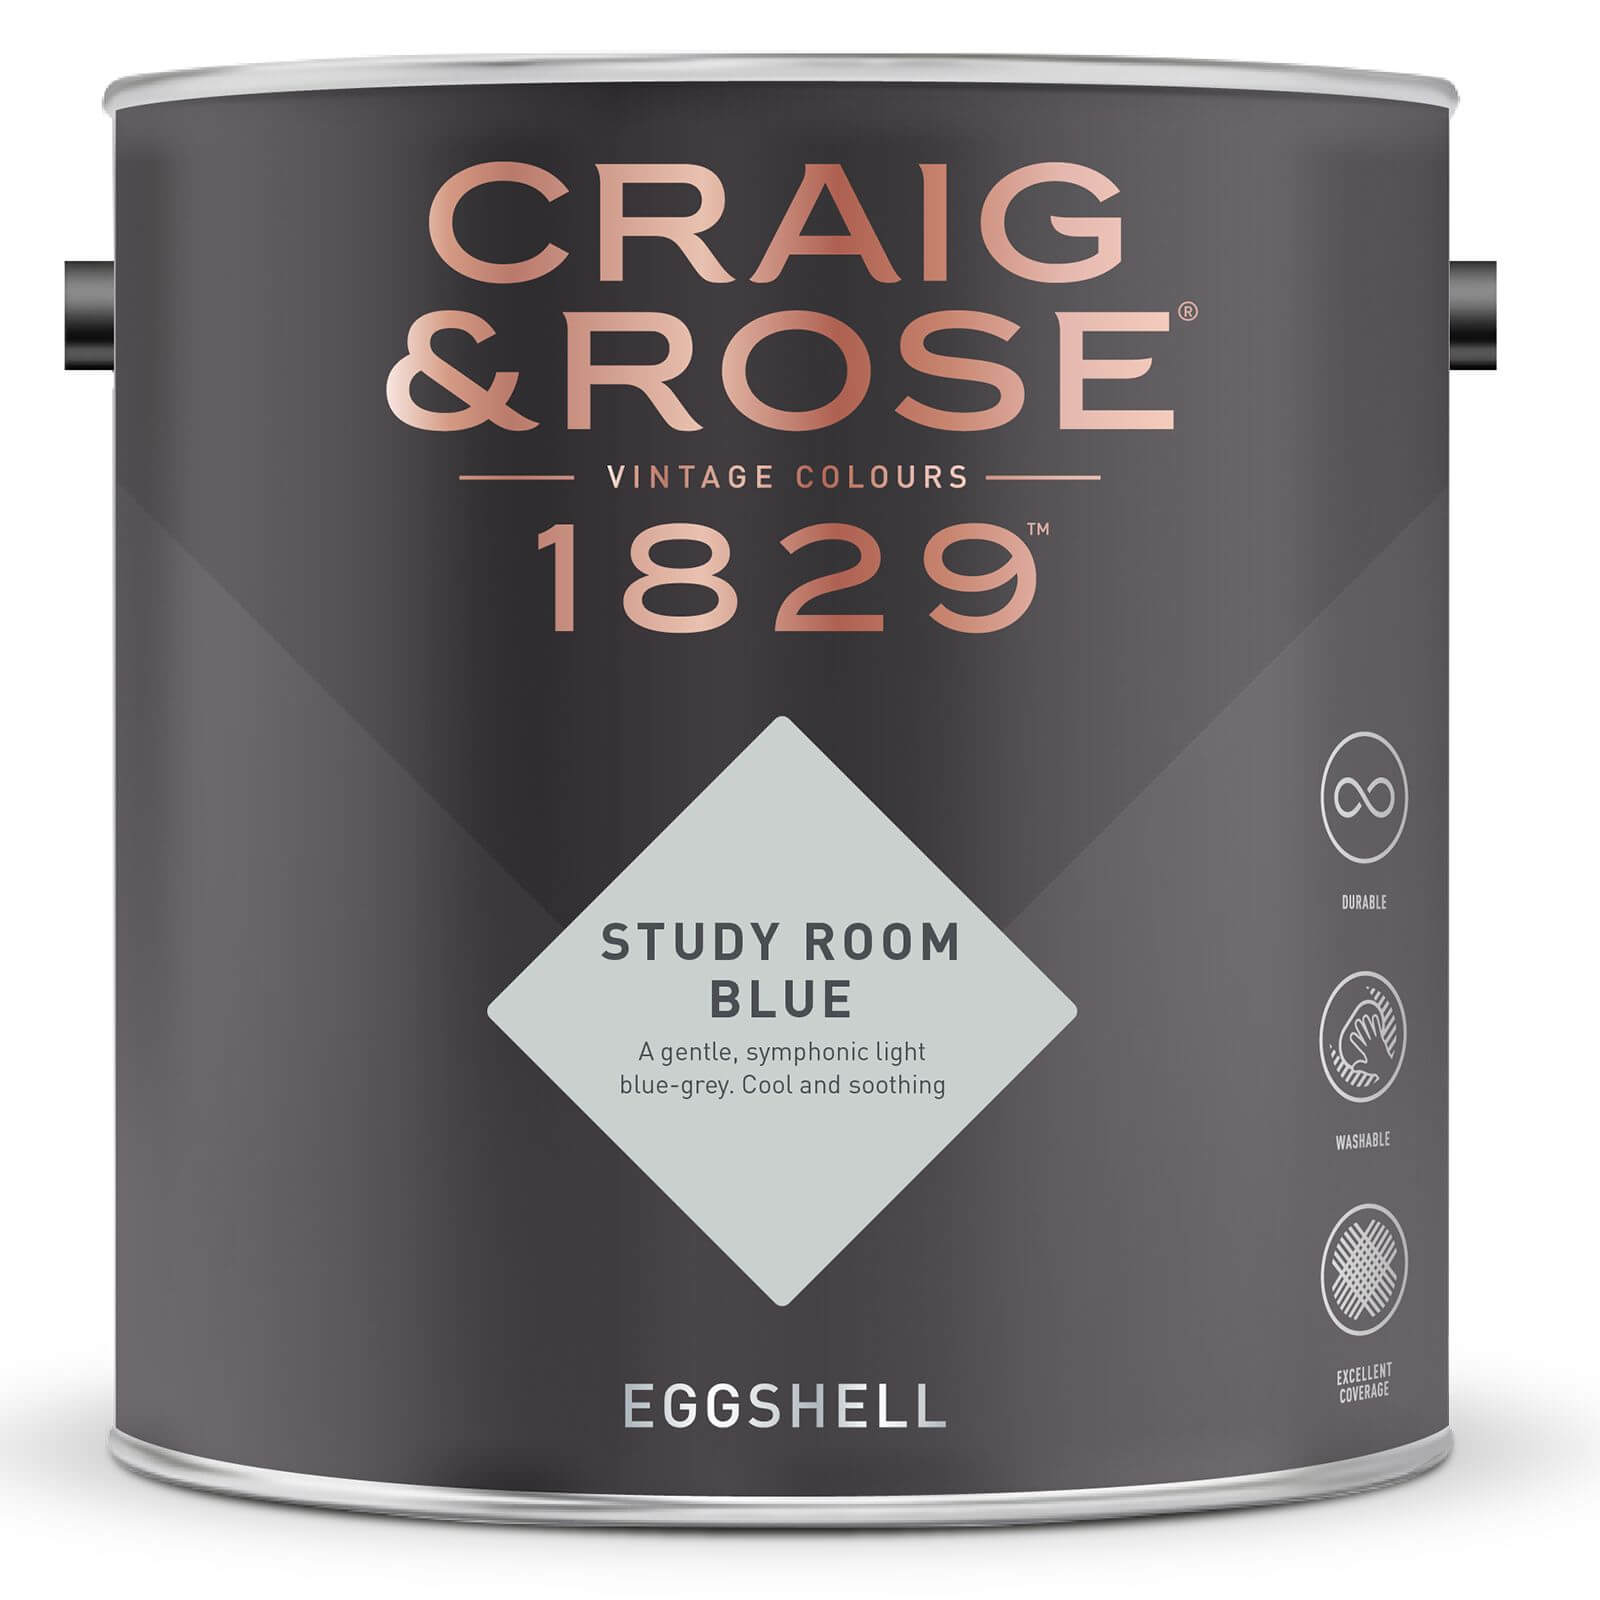 Craig & Rose 1829 Eggshell Paint Study Room Blue - 2.5L